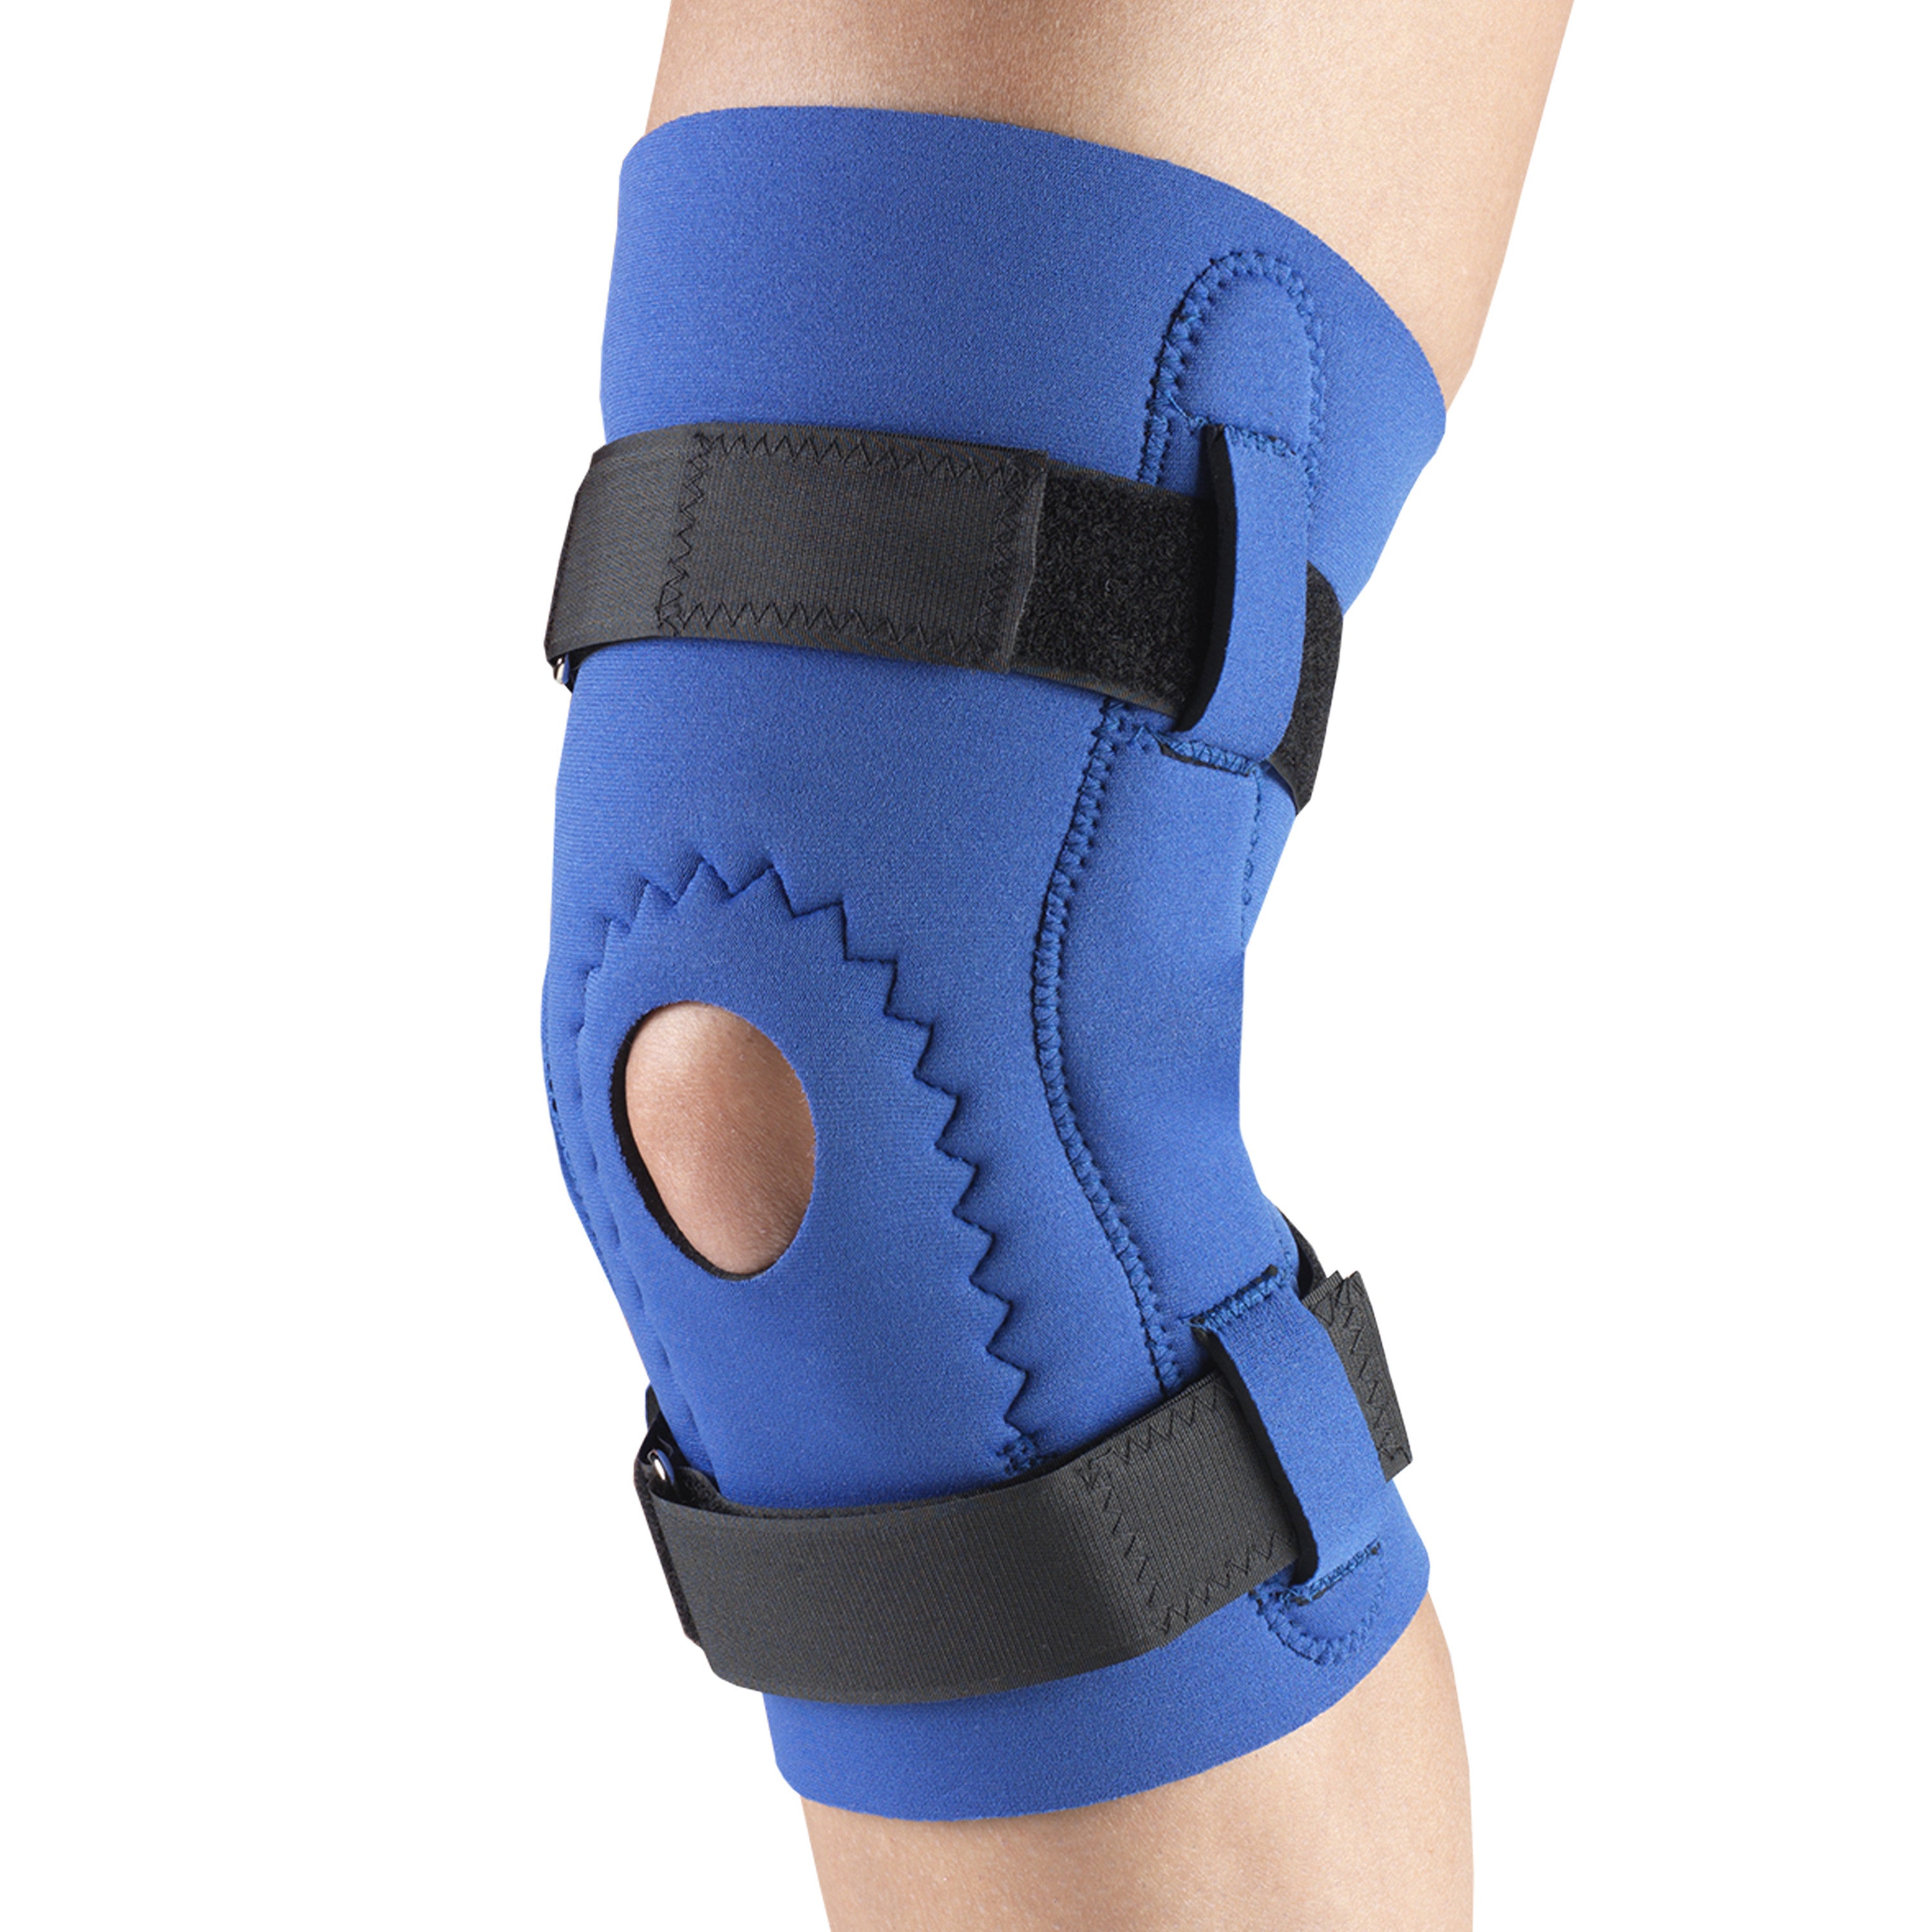 Neoprene Support Products  Neoprene Knee Brace Supplier - TJ